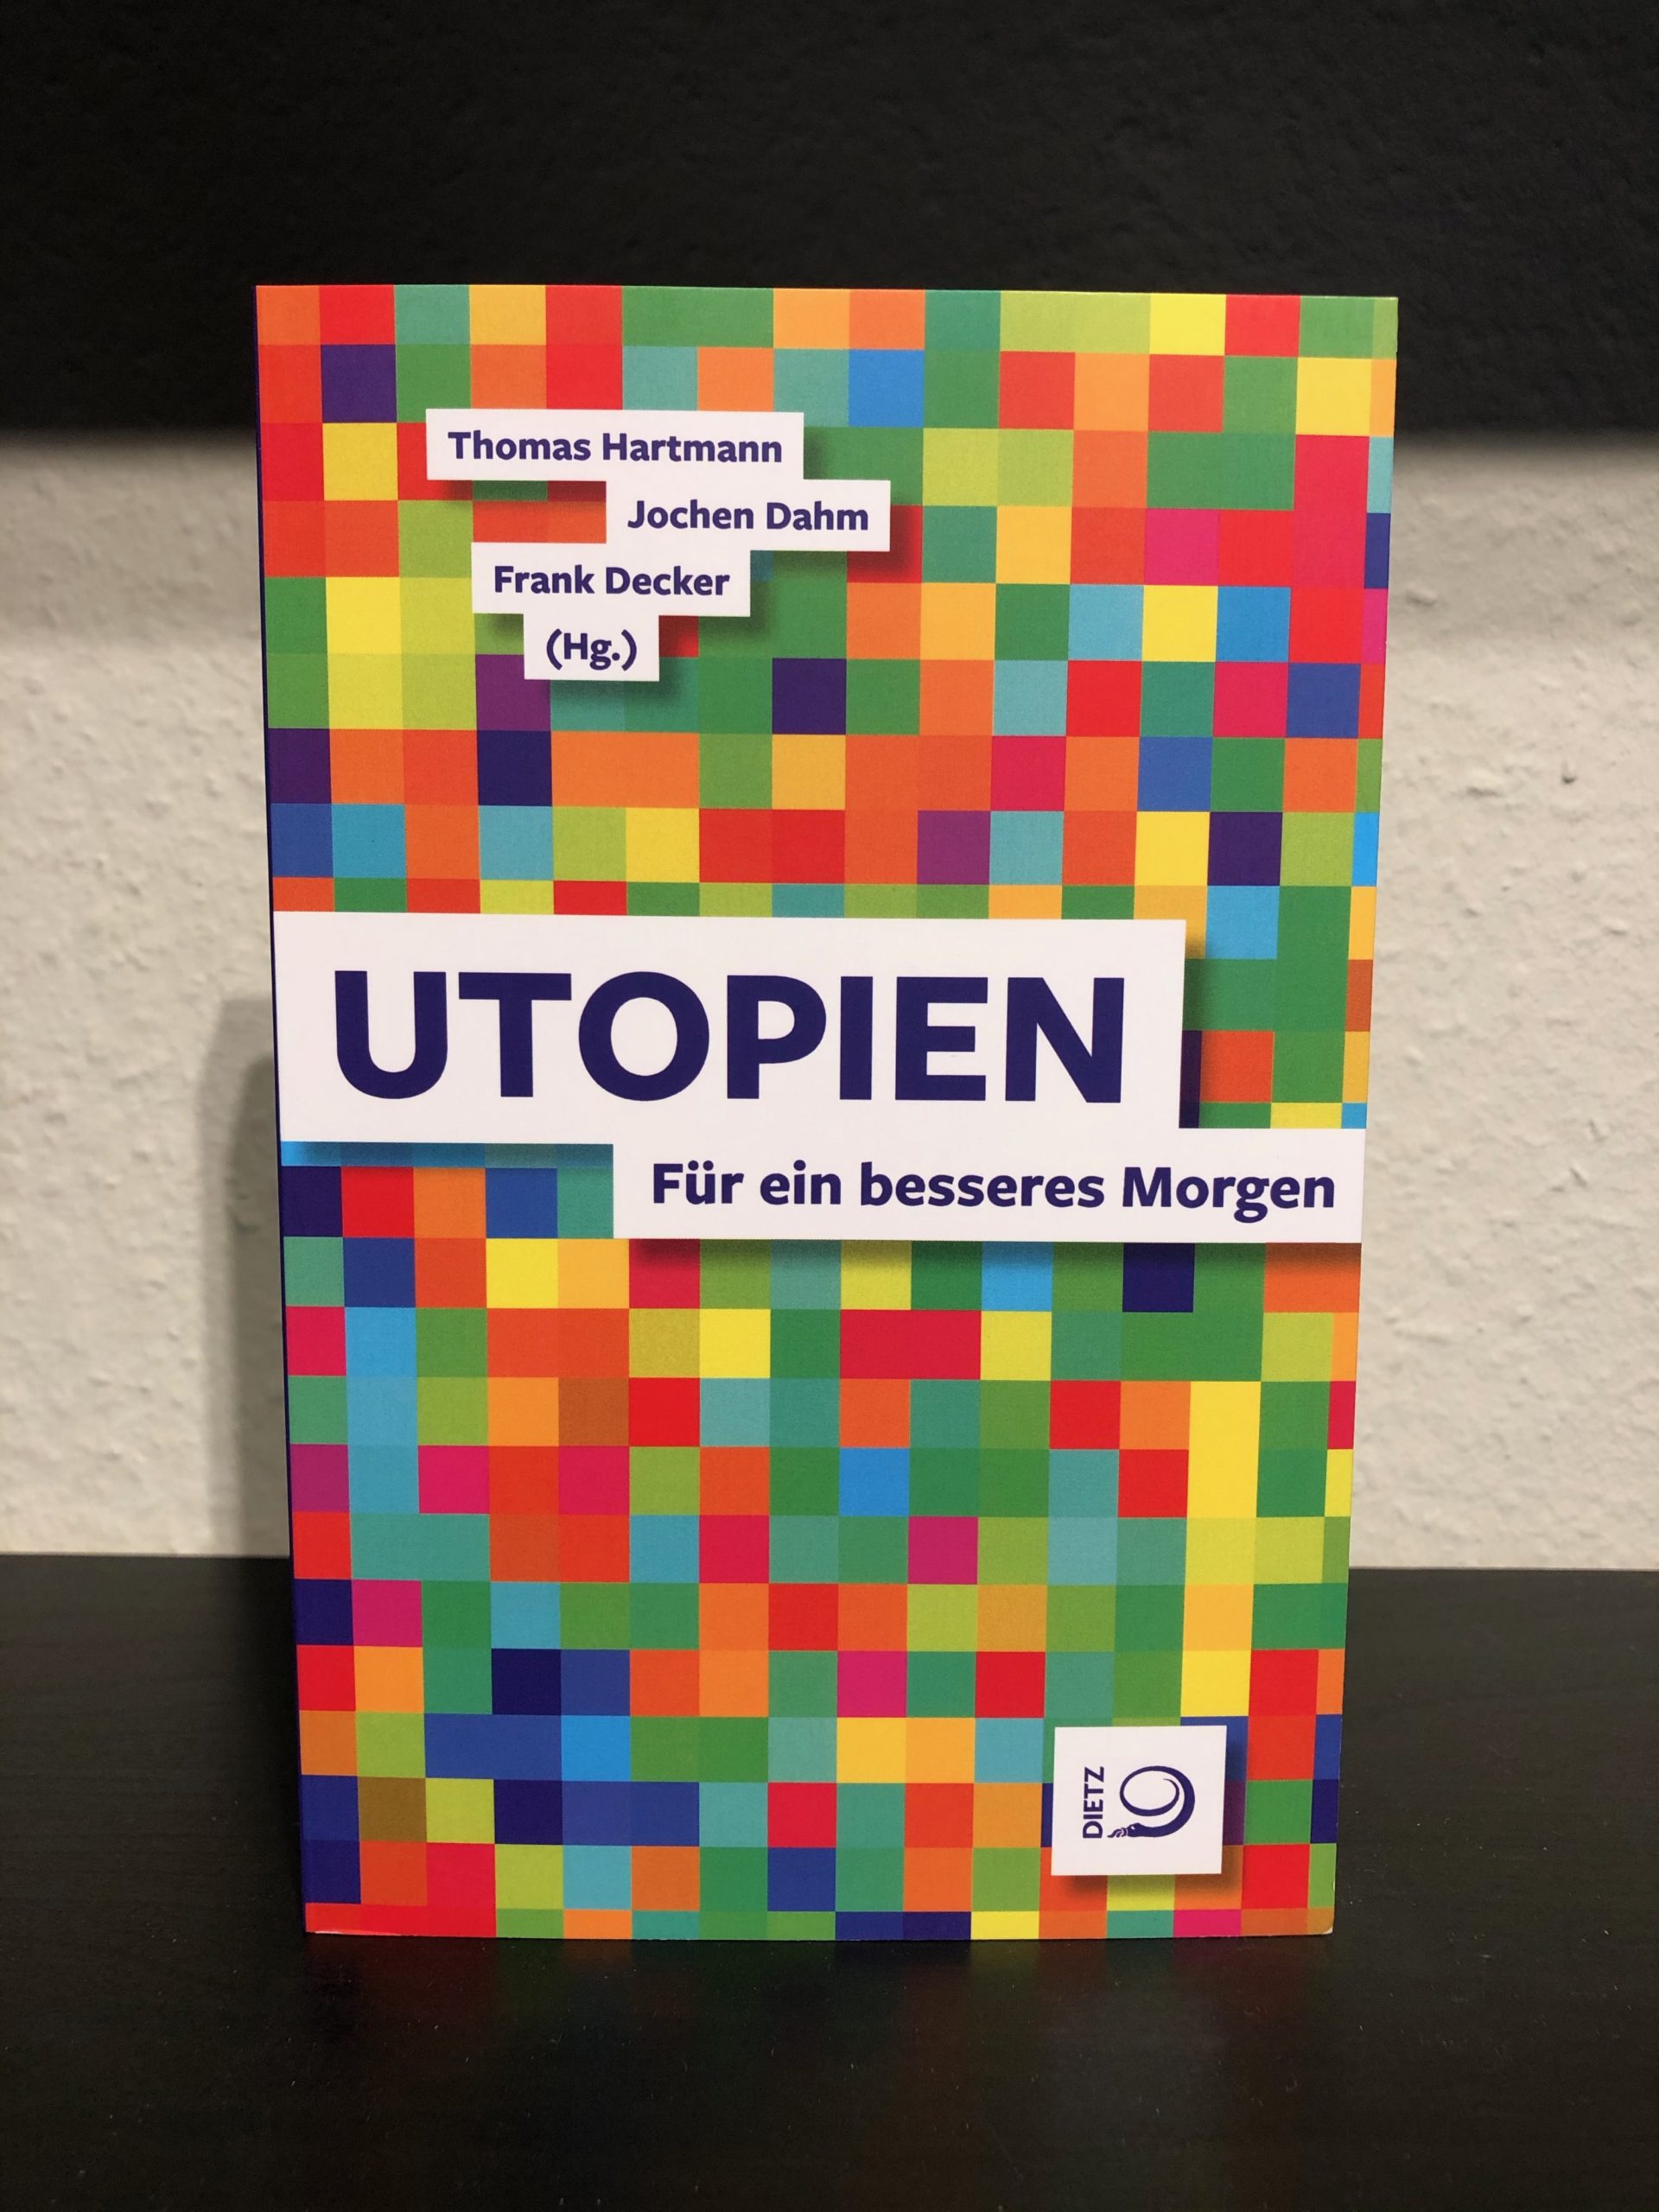 Utopien - Für ein besseres Morgen - Thomas Hartmann, Jochen Dahm, Frank Decker